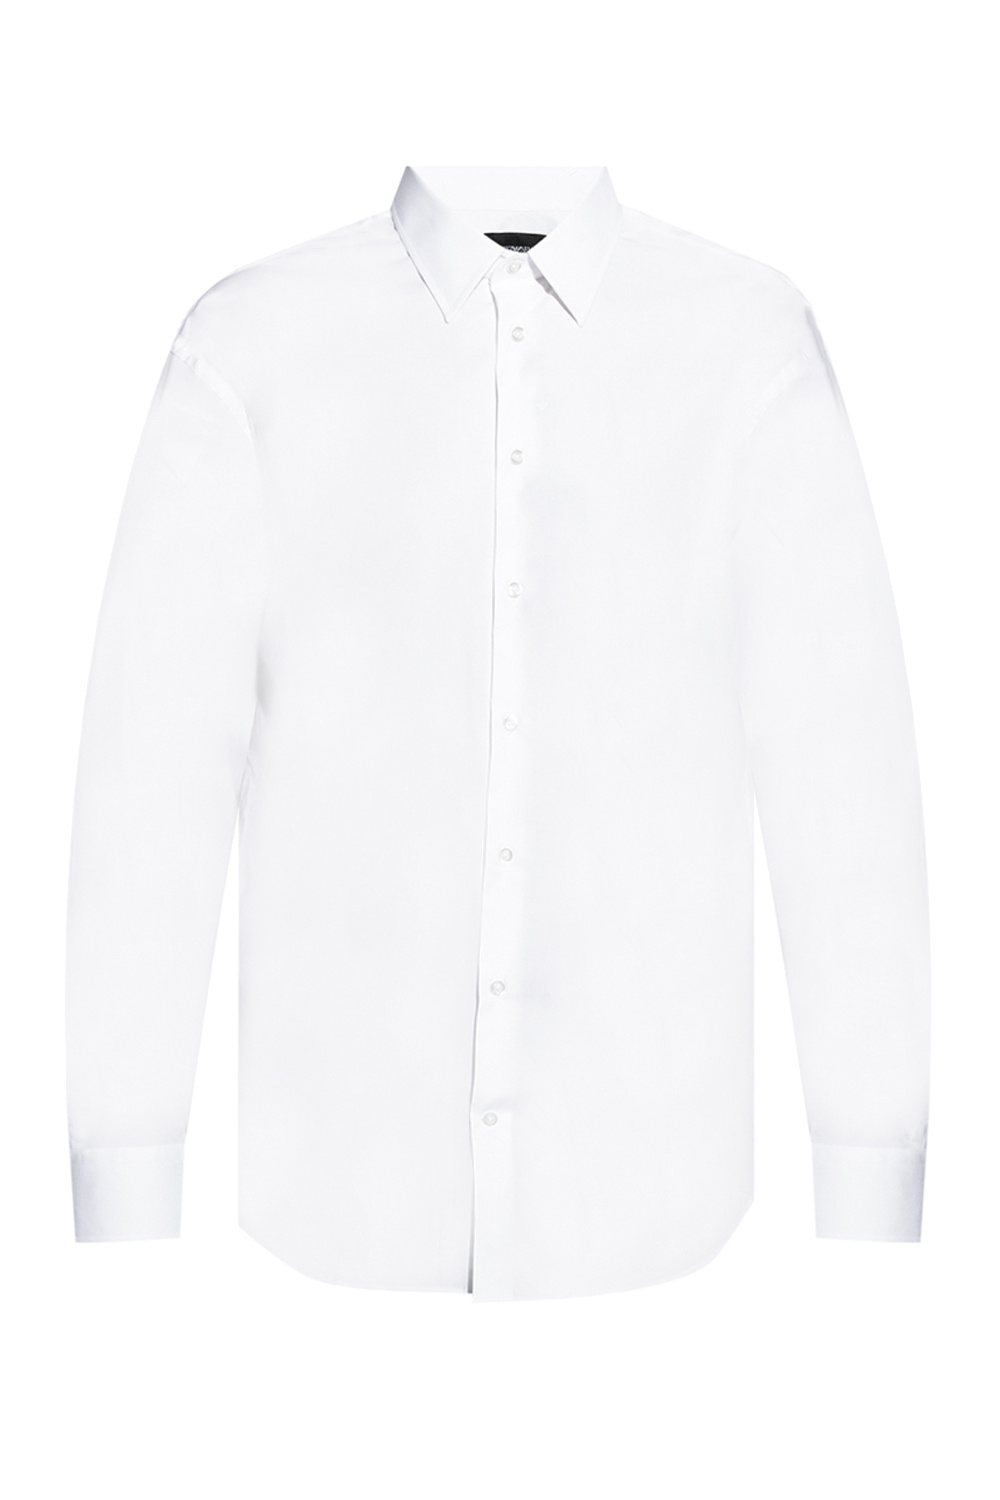 Emporio armani waist Cotton shirt